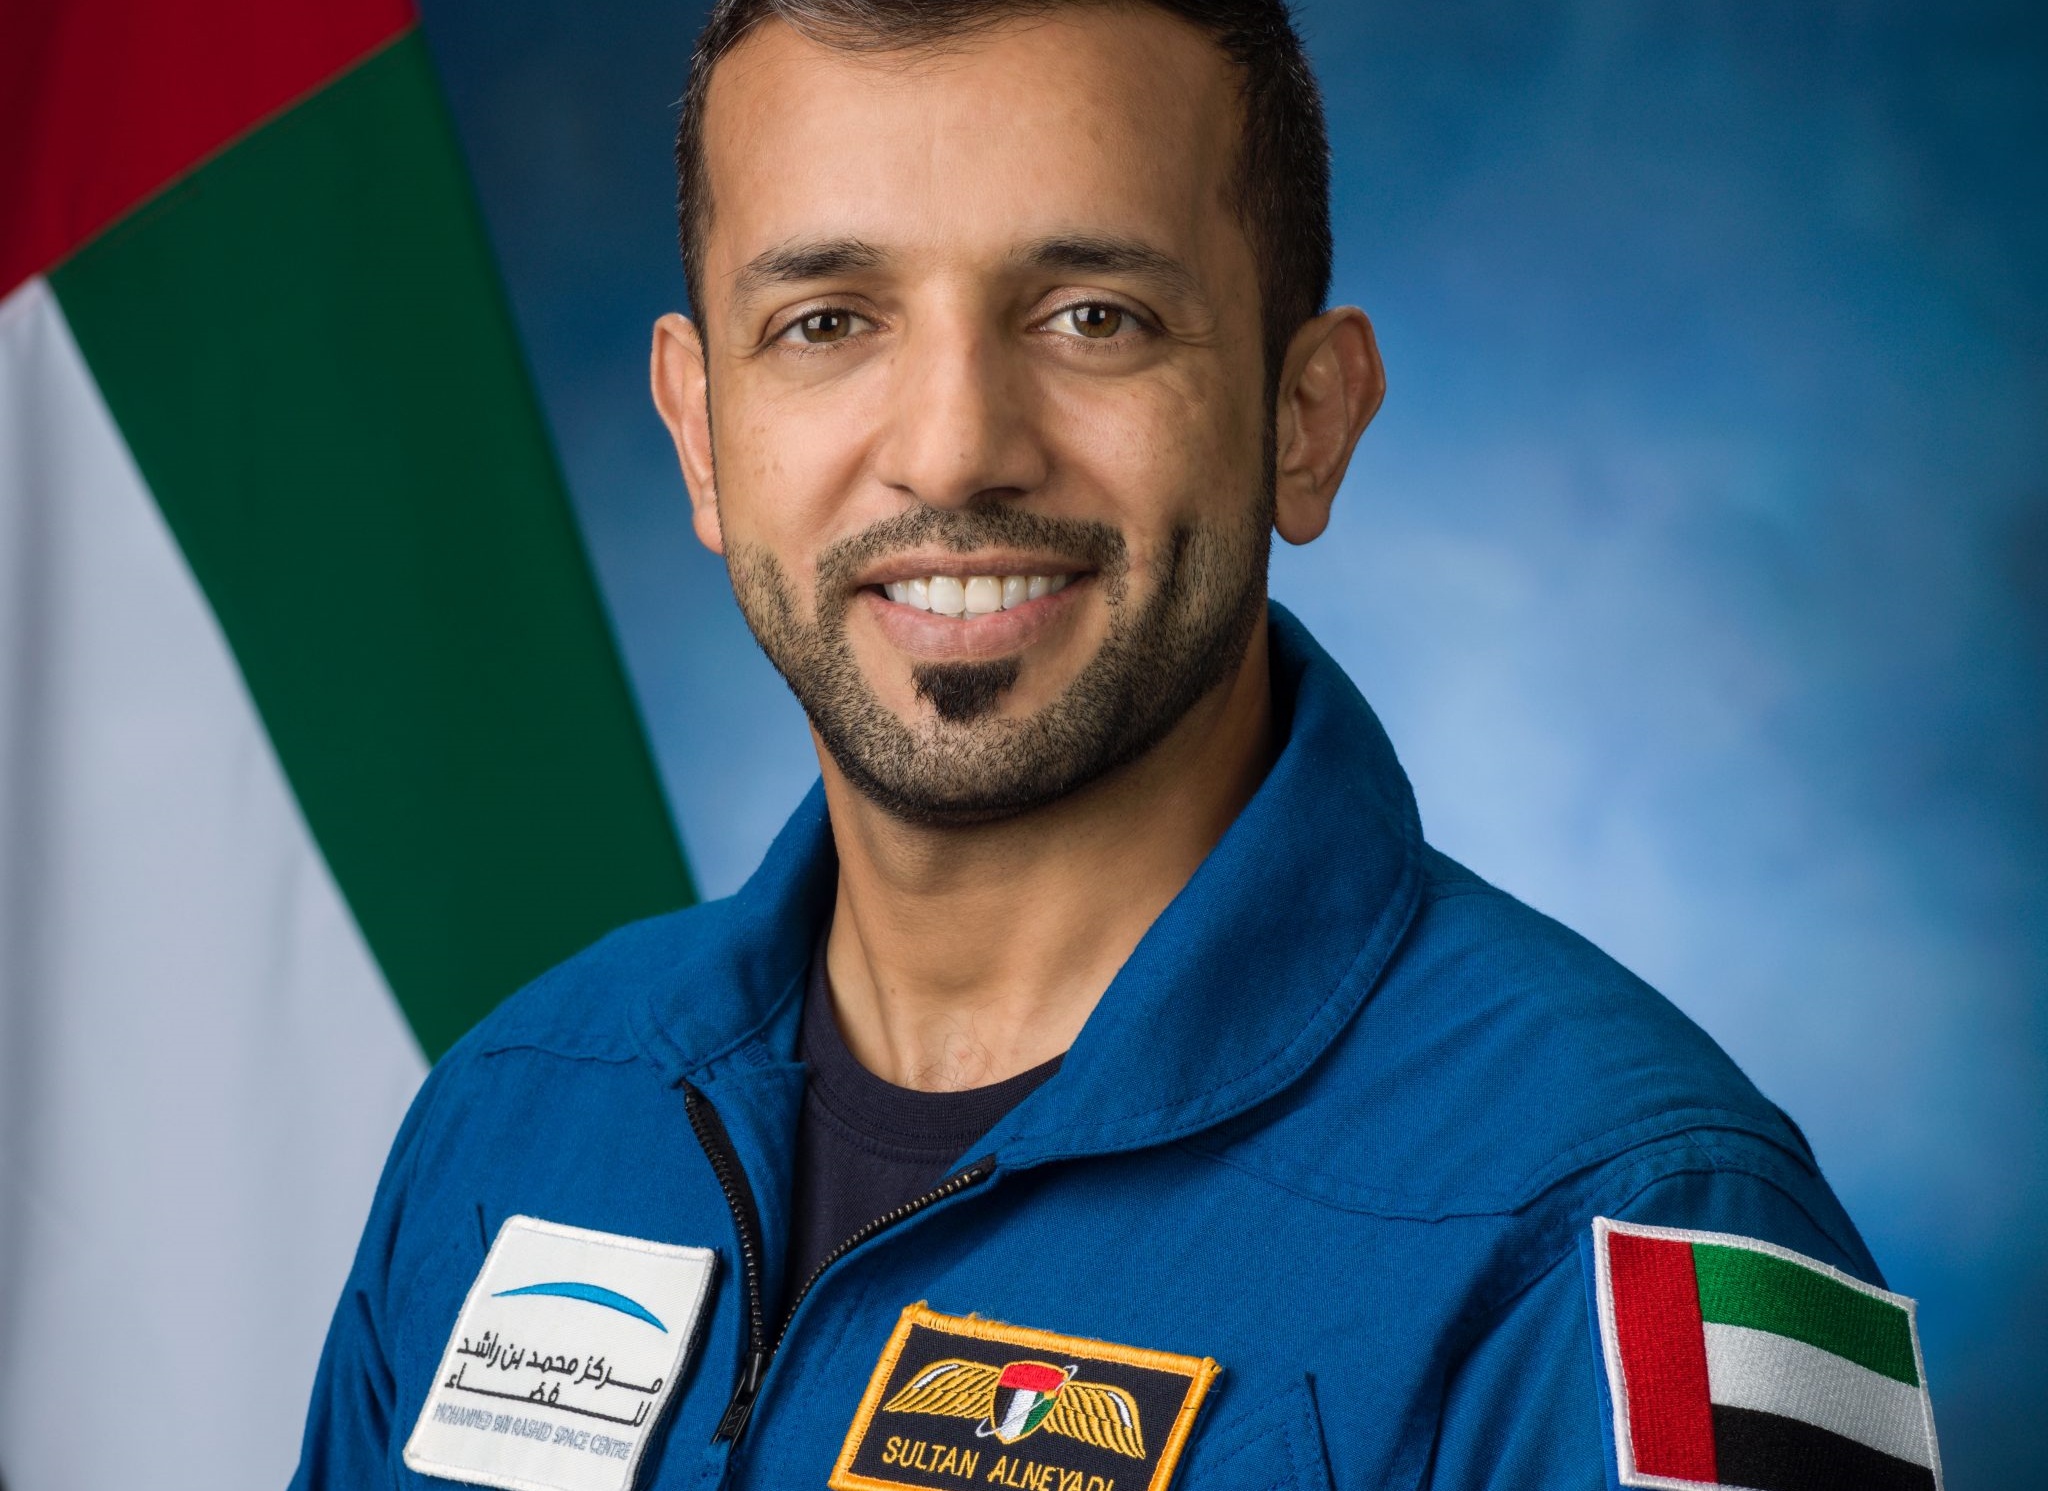 Prima passeggiata spaziale della storia per astronauta emiratino